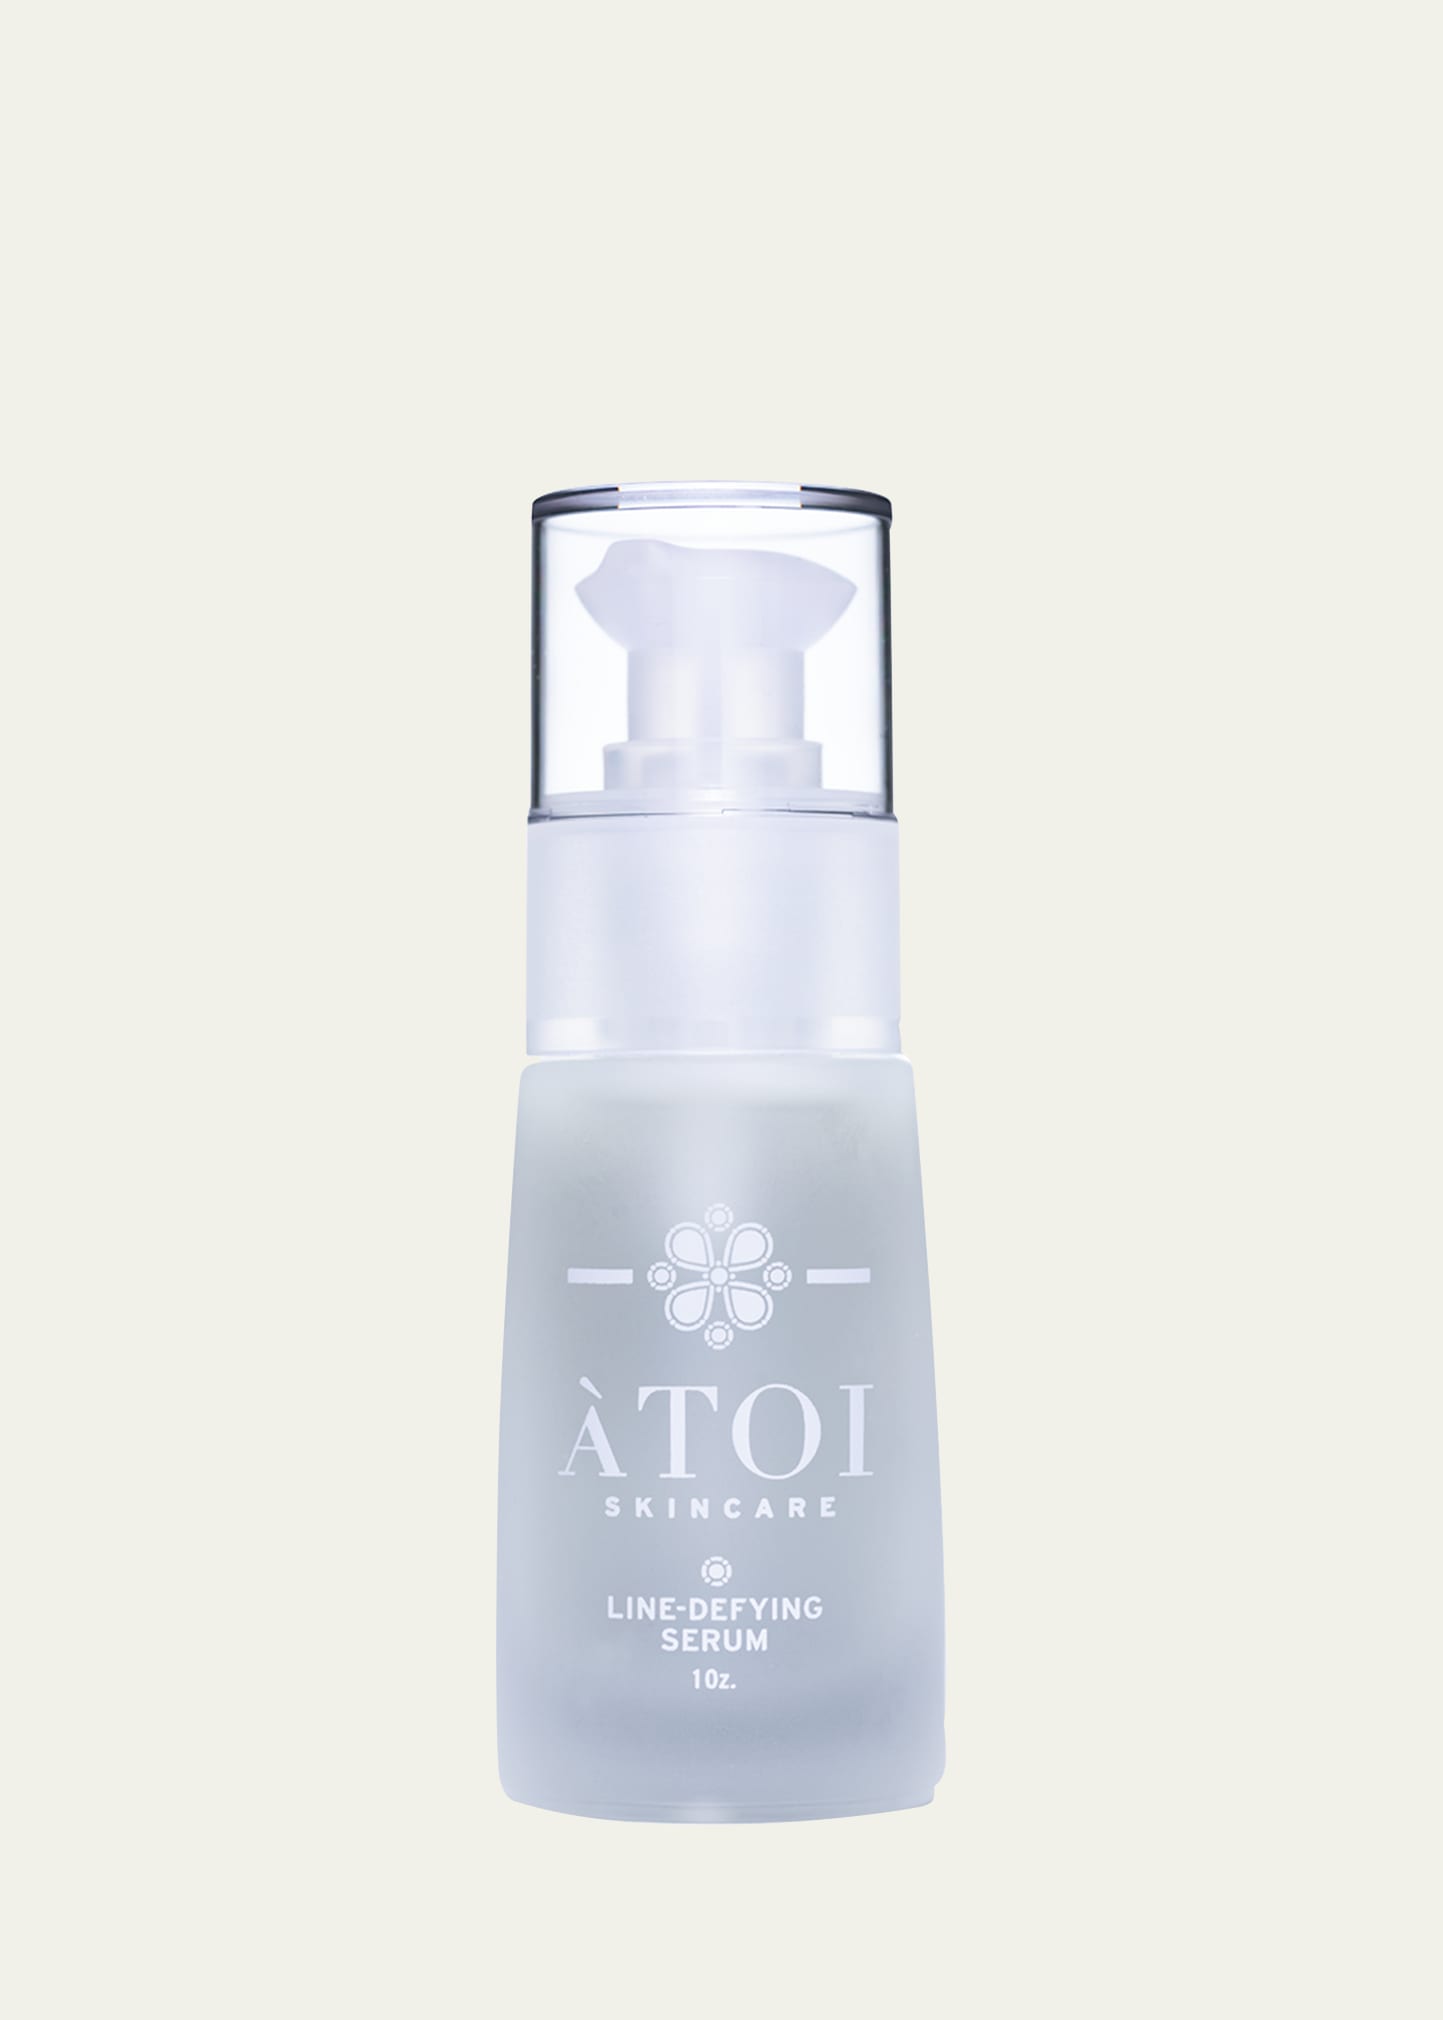 ATOI Skincare Line Defying Serum, 1 oz.